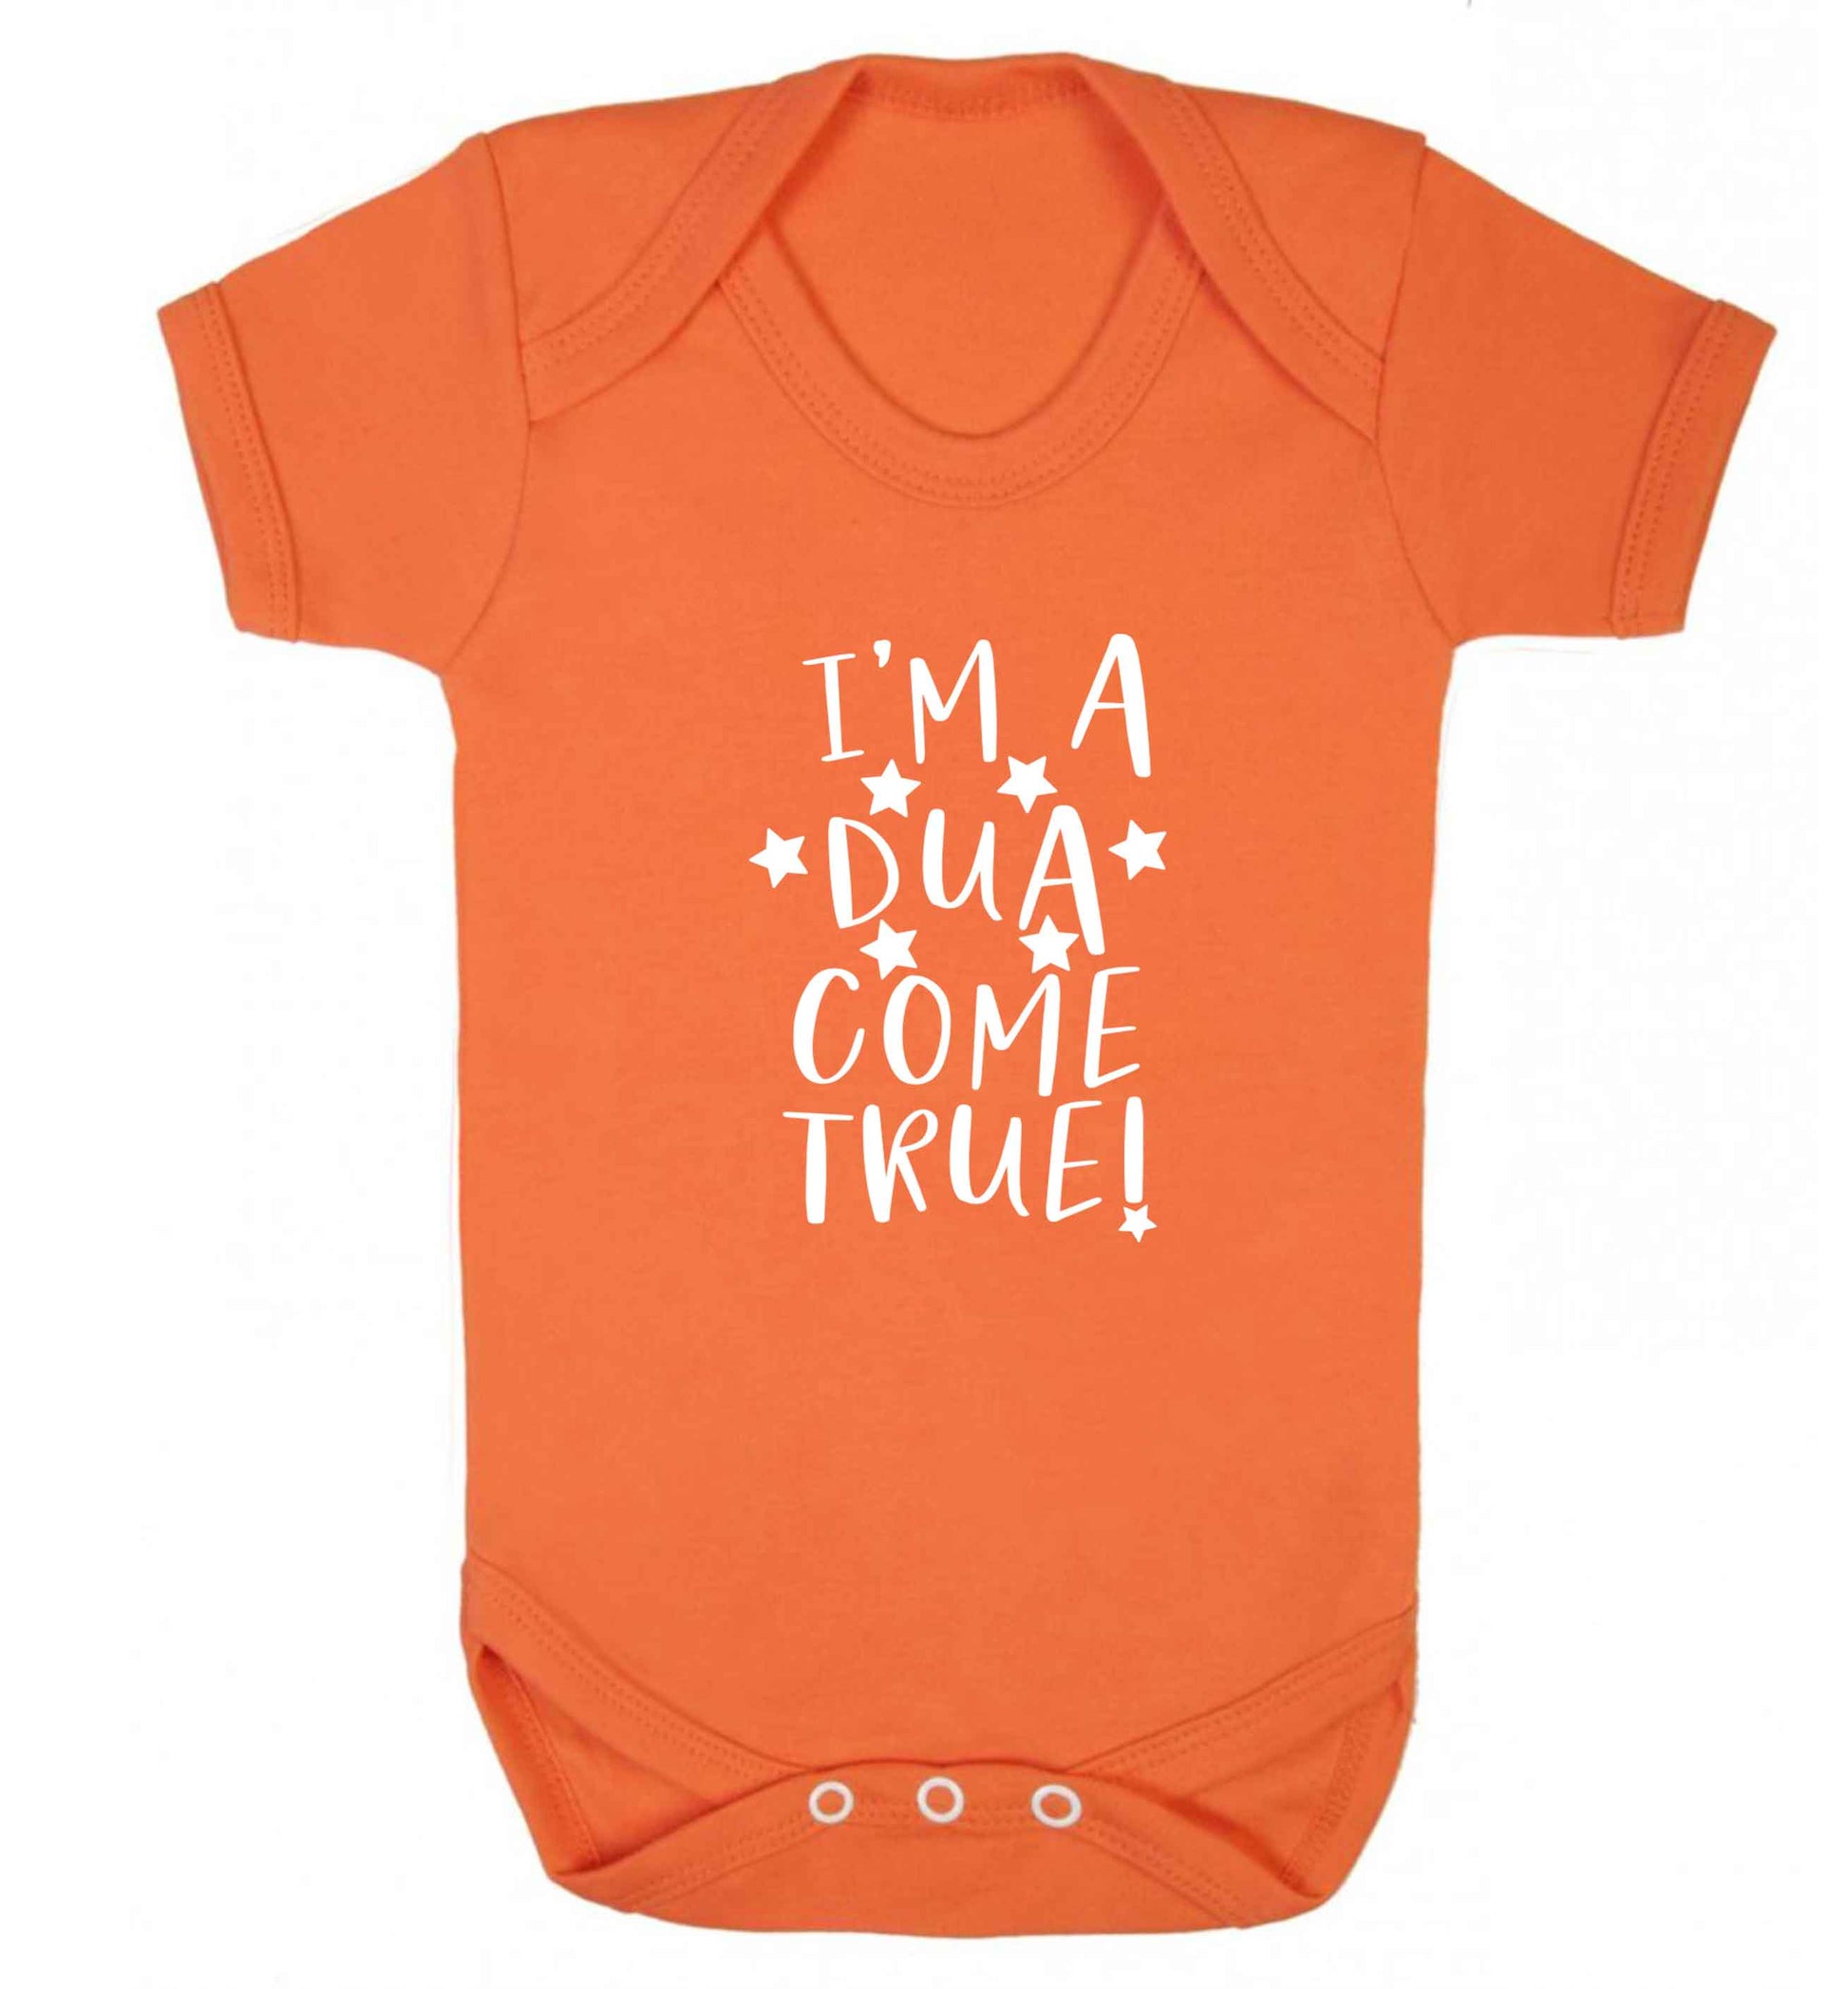 I'm a dua come true baby vest orange 18-24 months